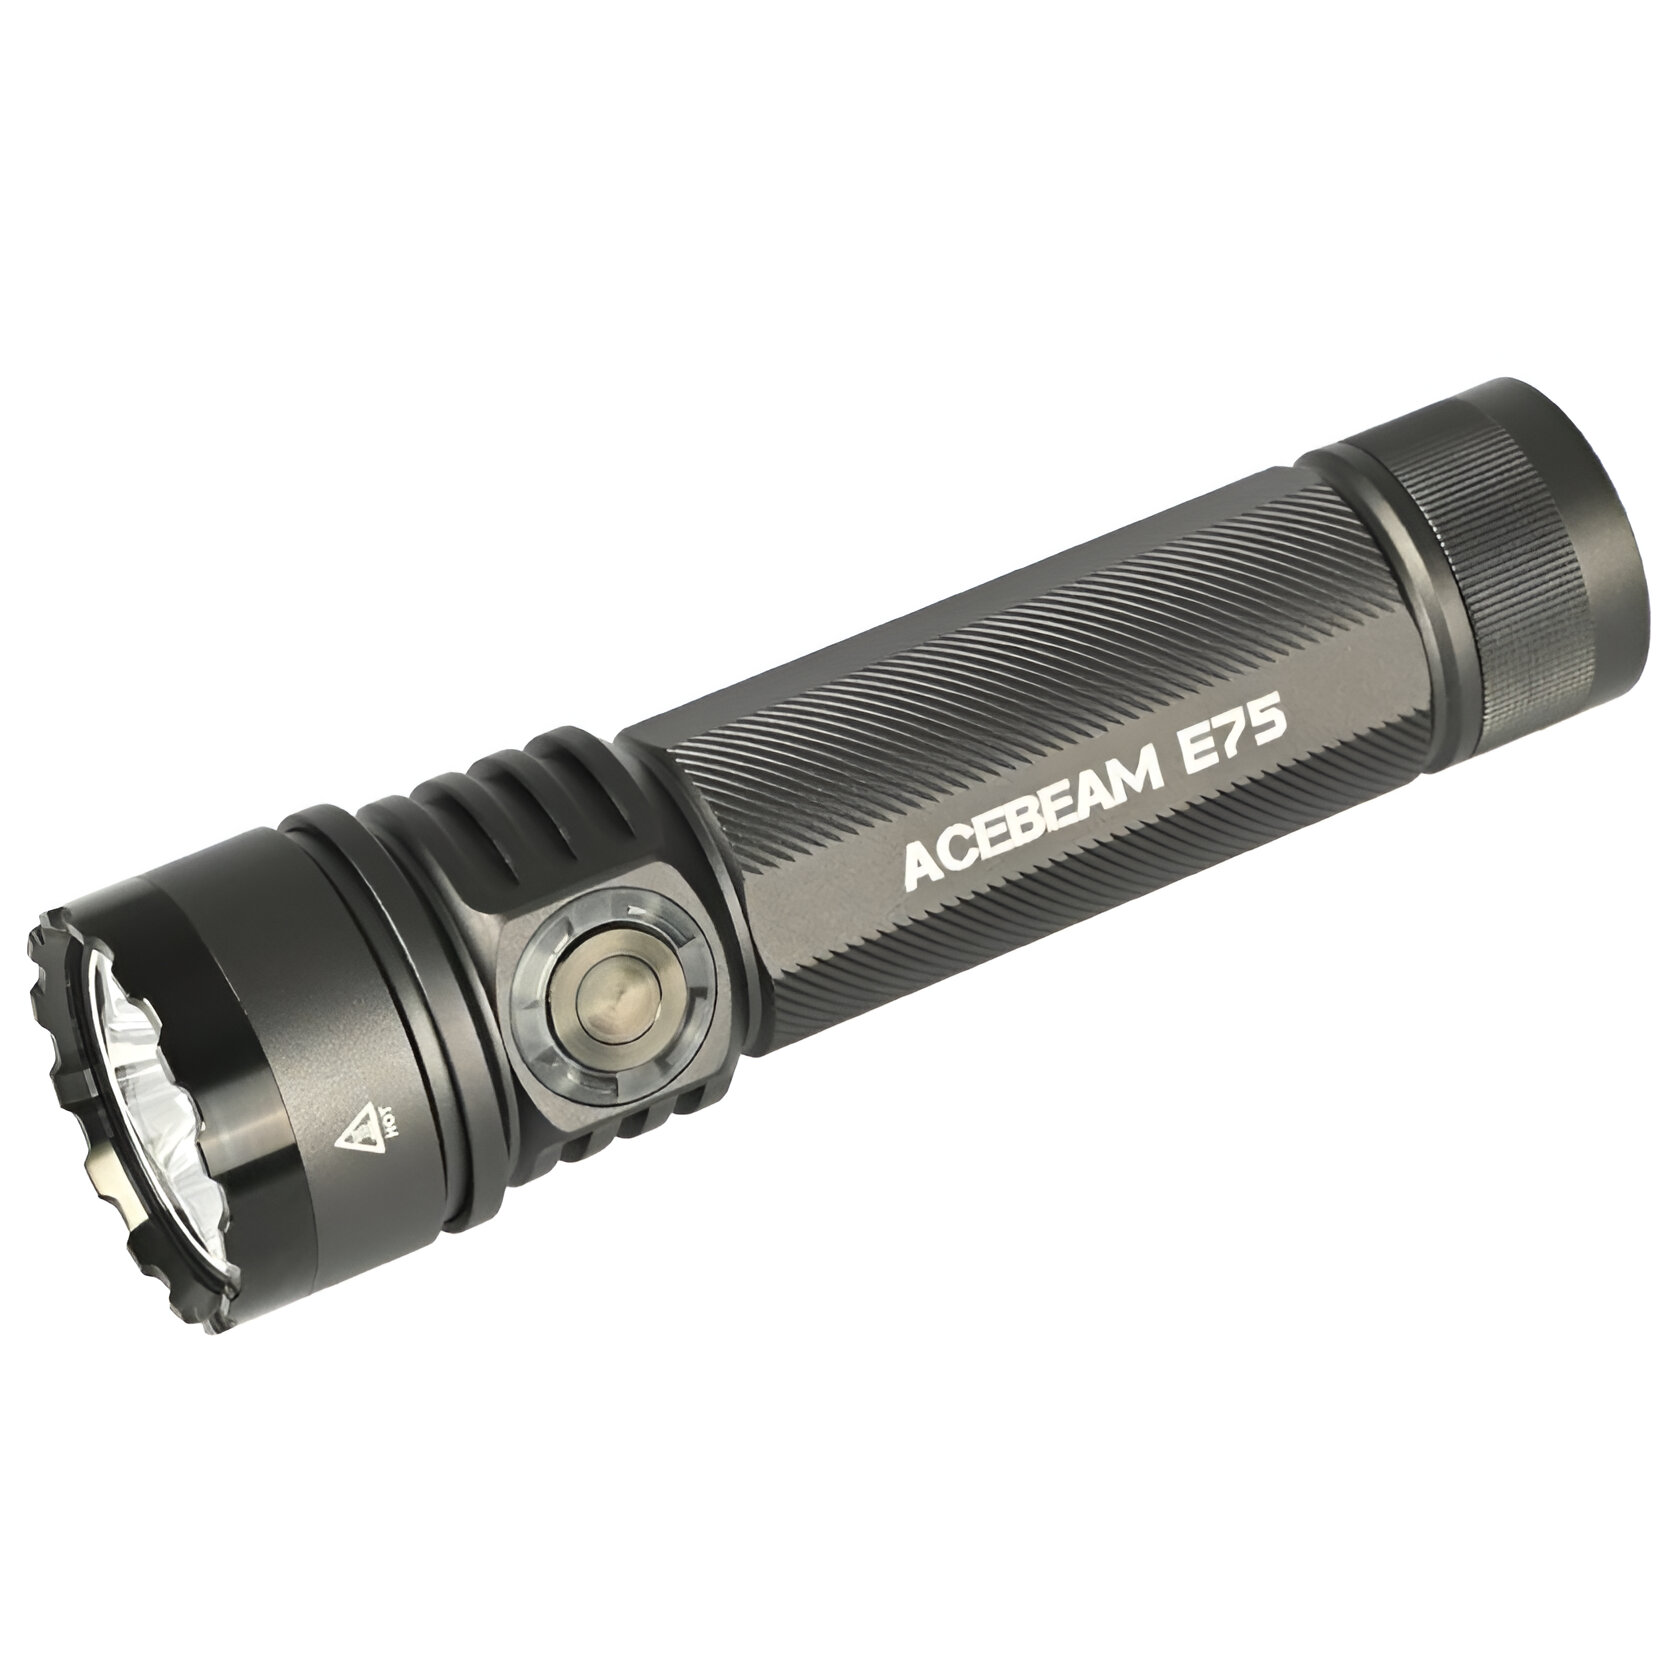 AceBeam E75, 4500 lm, grey - Taktická LED svítilna, šedá